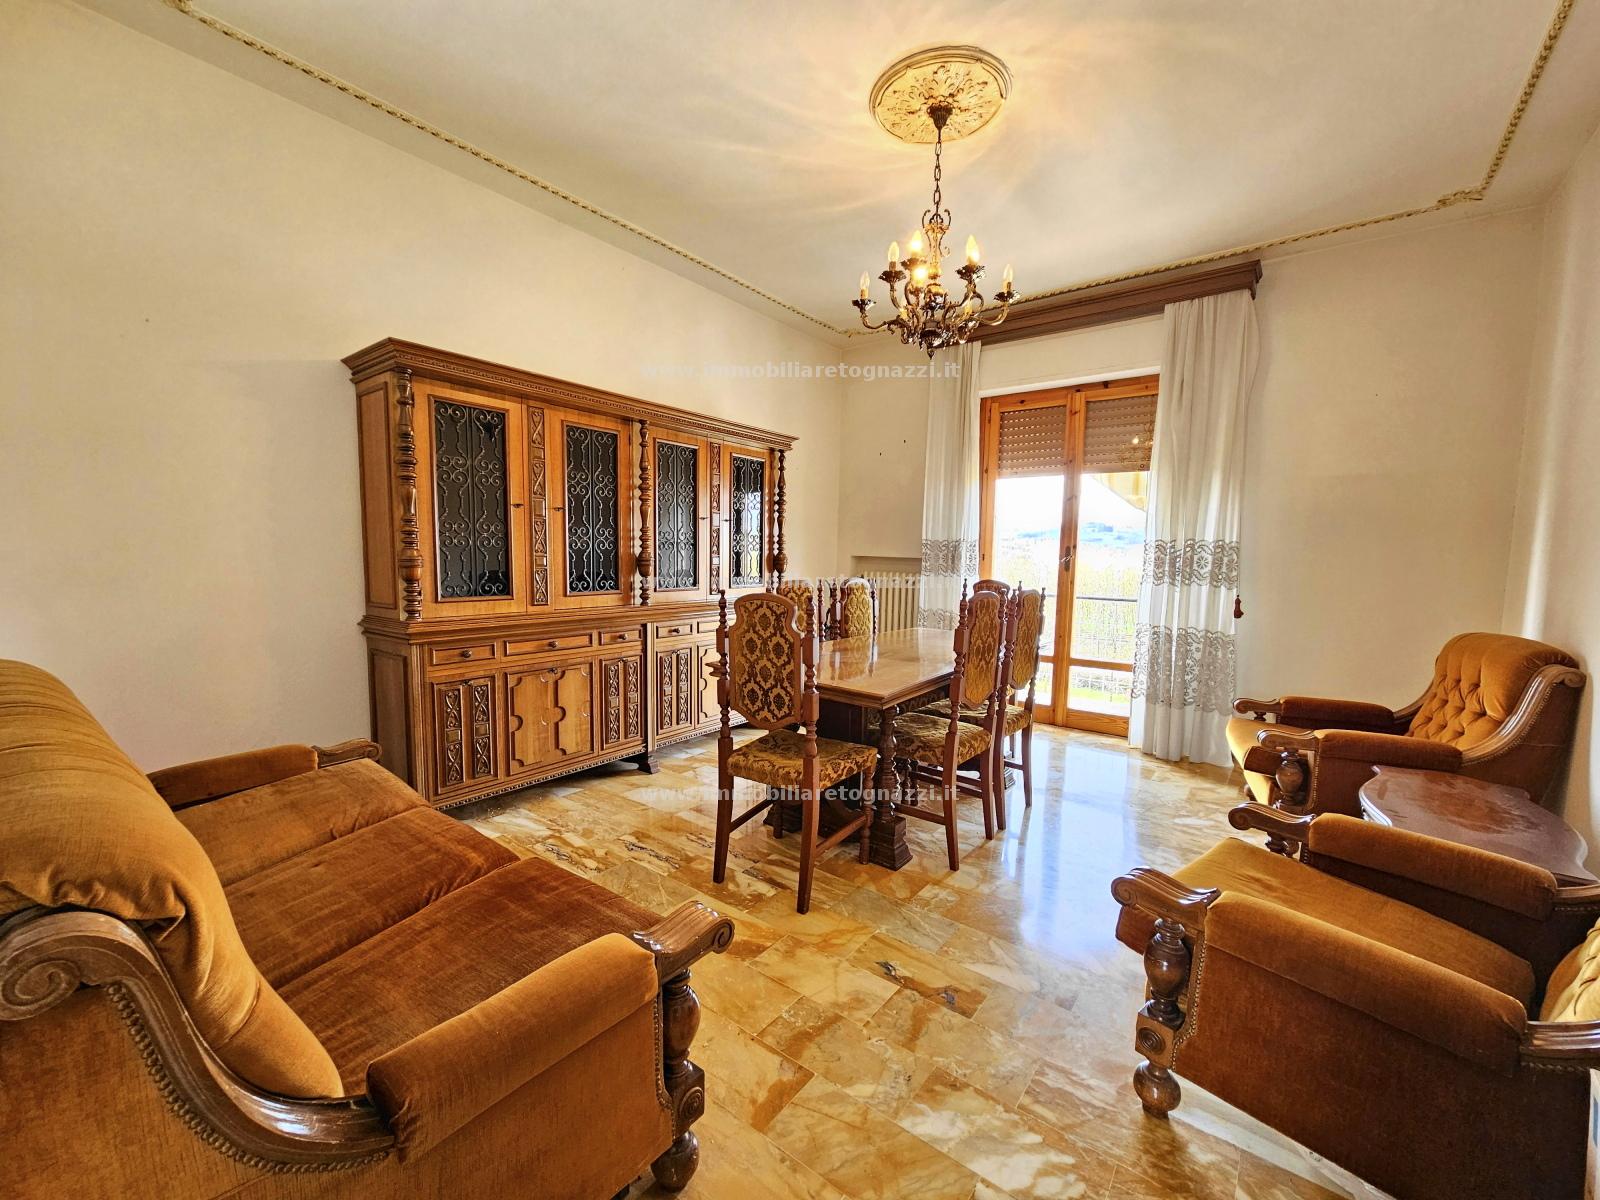 Appartamento in vendita a Certaldo, 4 locali, prezzo € 100.000 | PortaleAgenzieImmobiliari.it